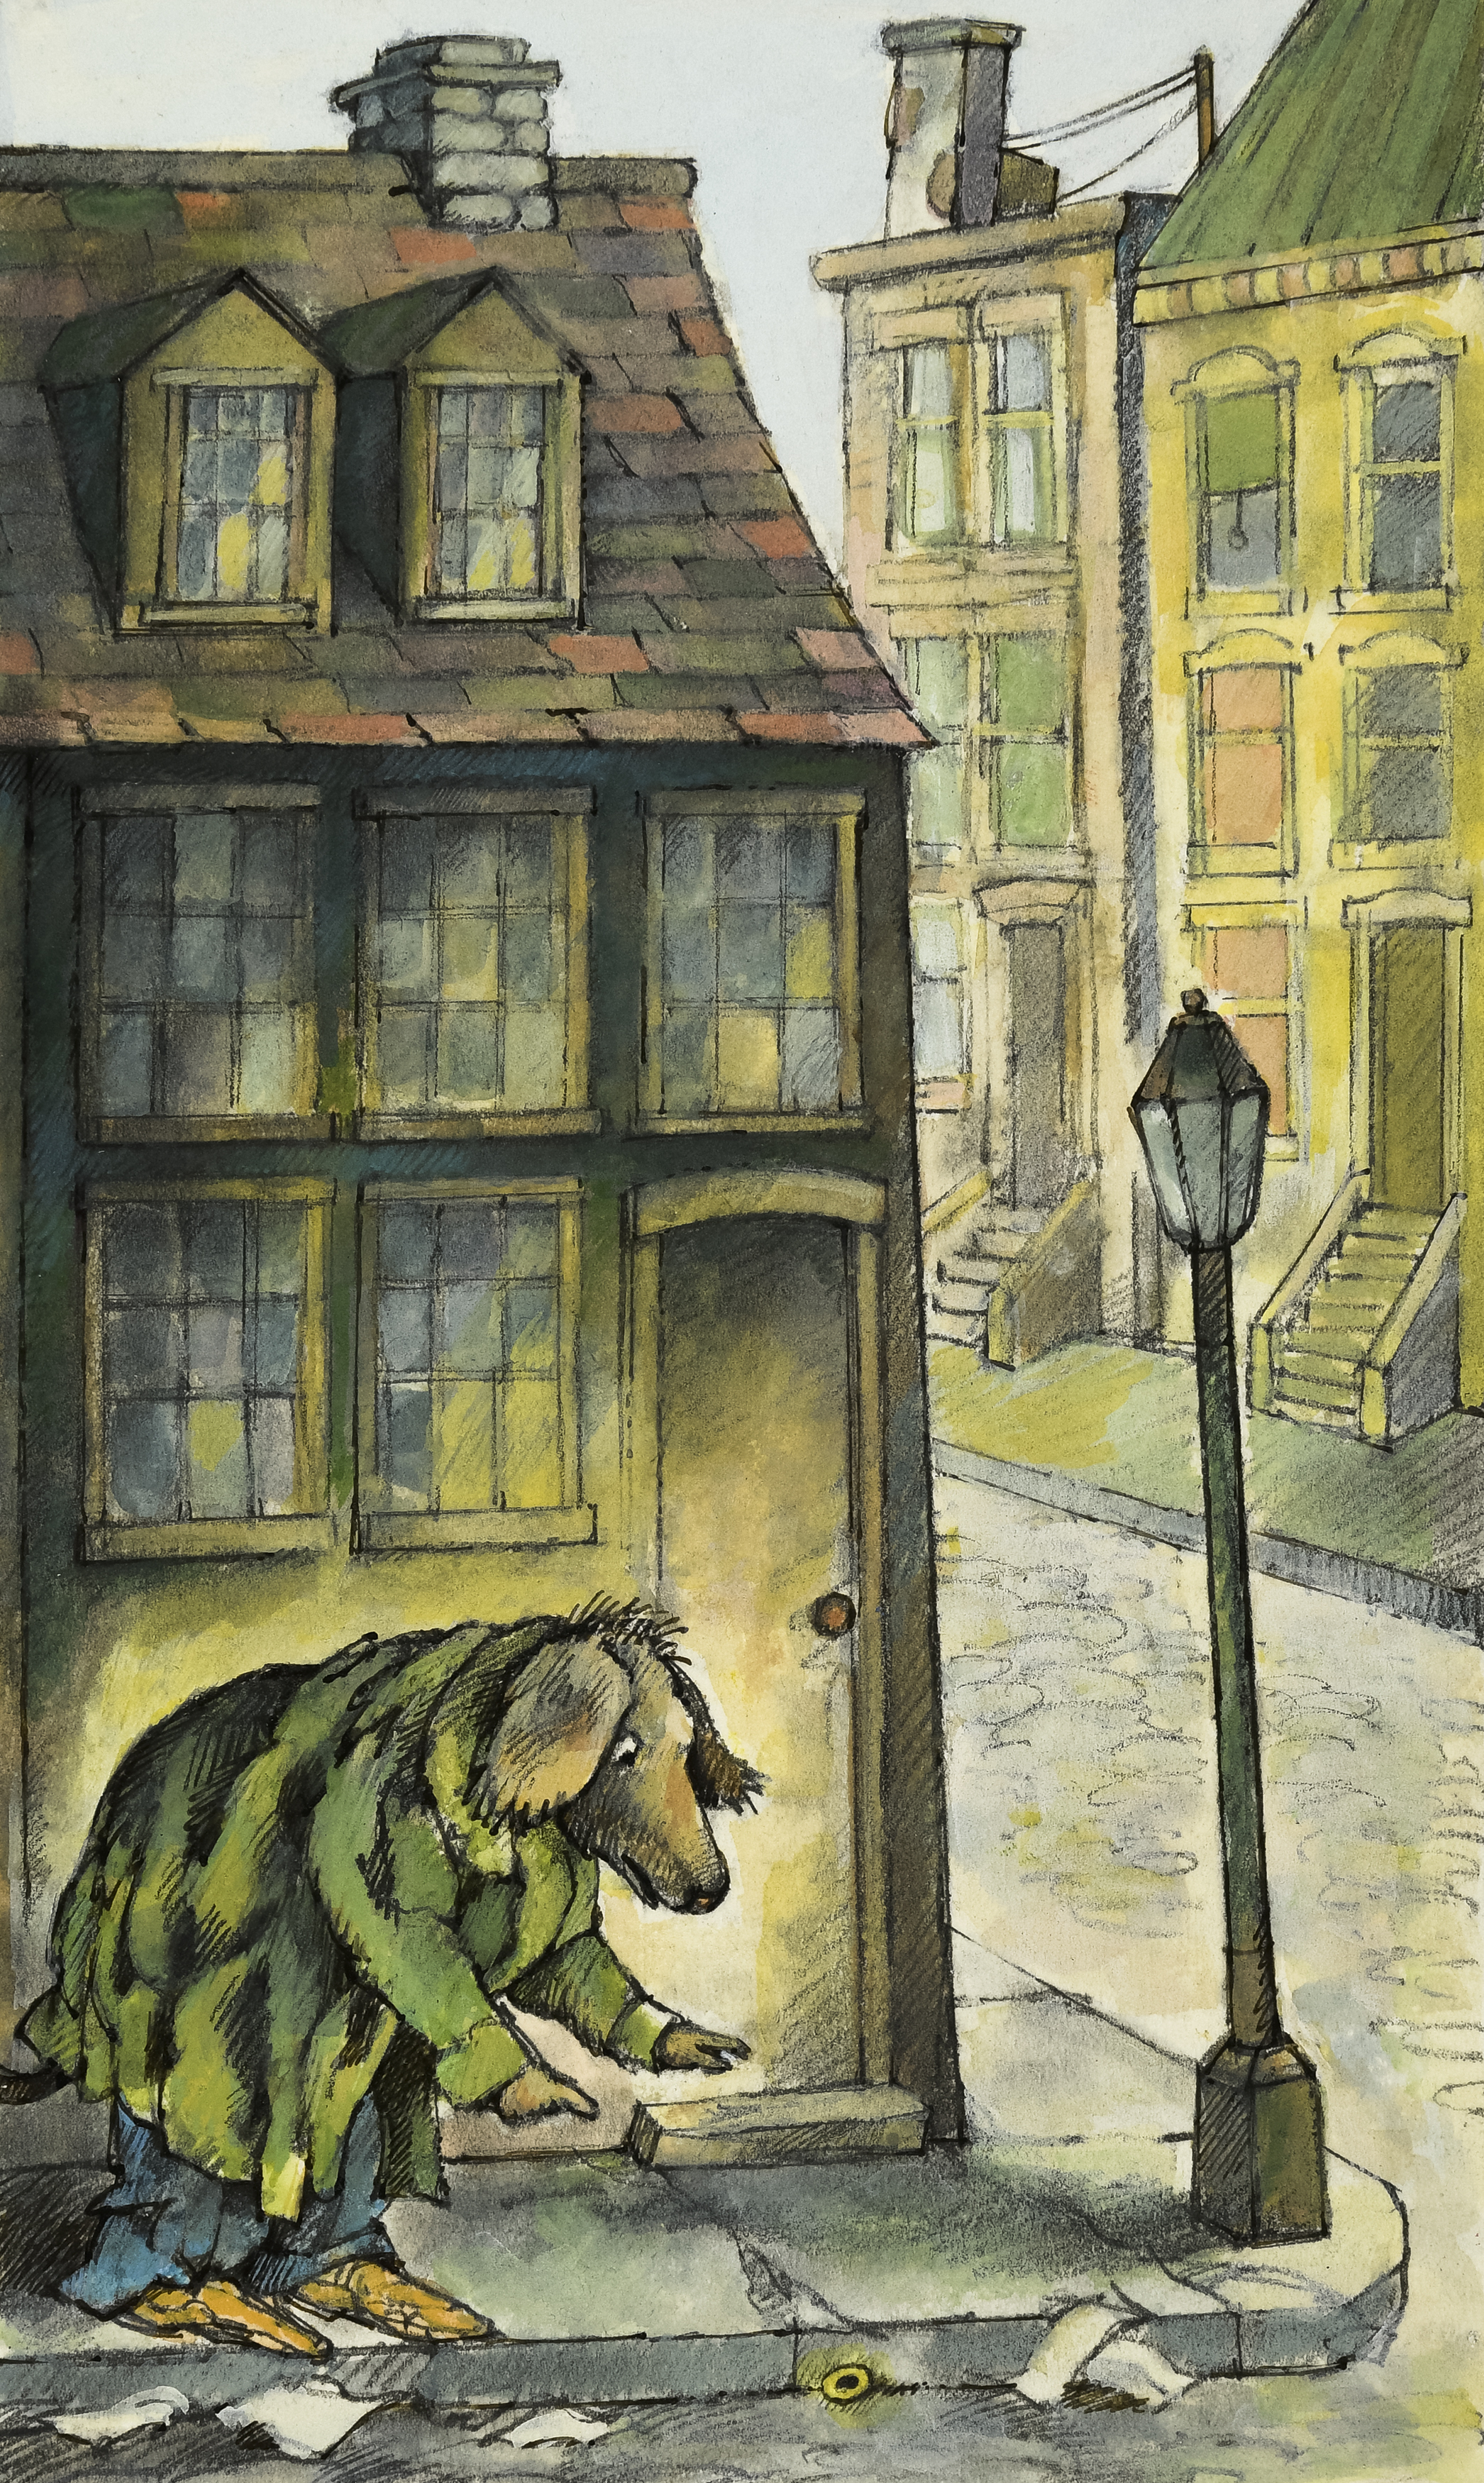 Illustration of dog begging on street. 